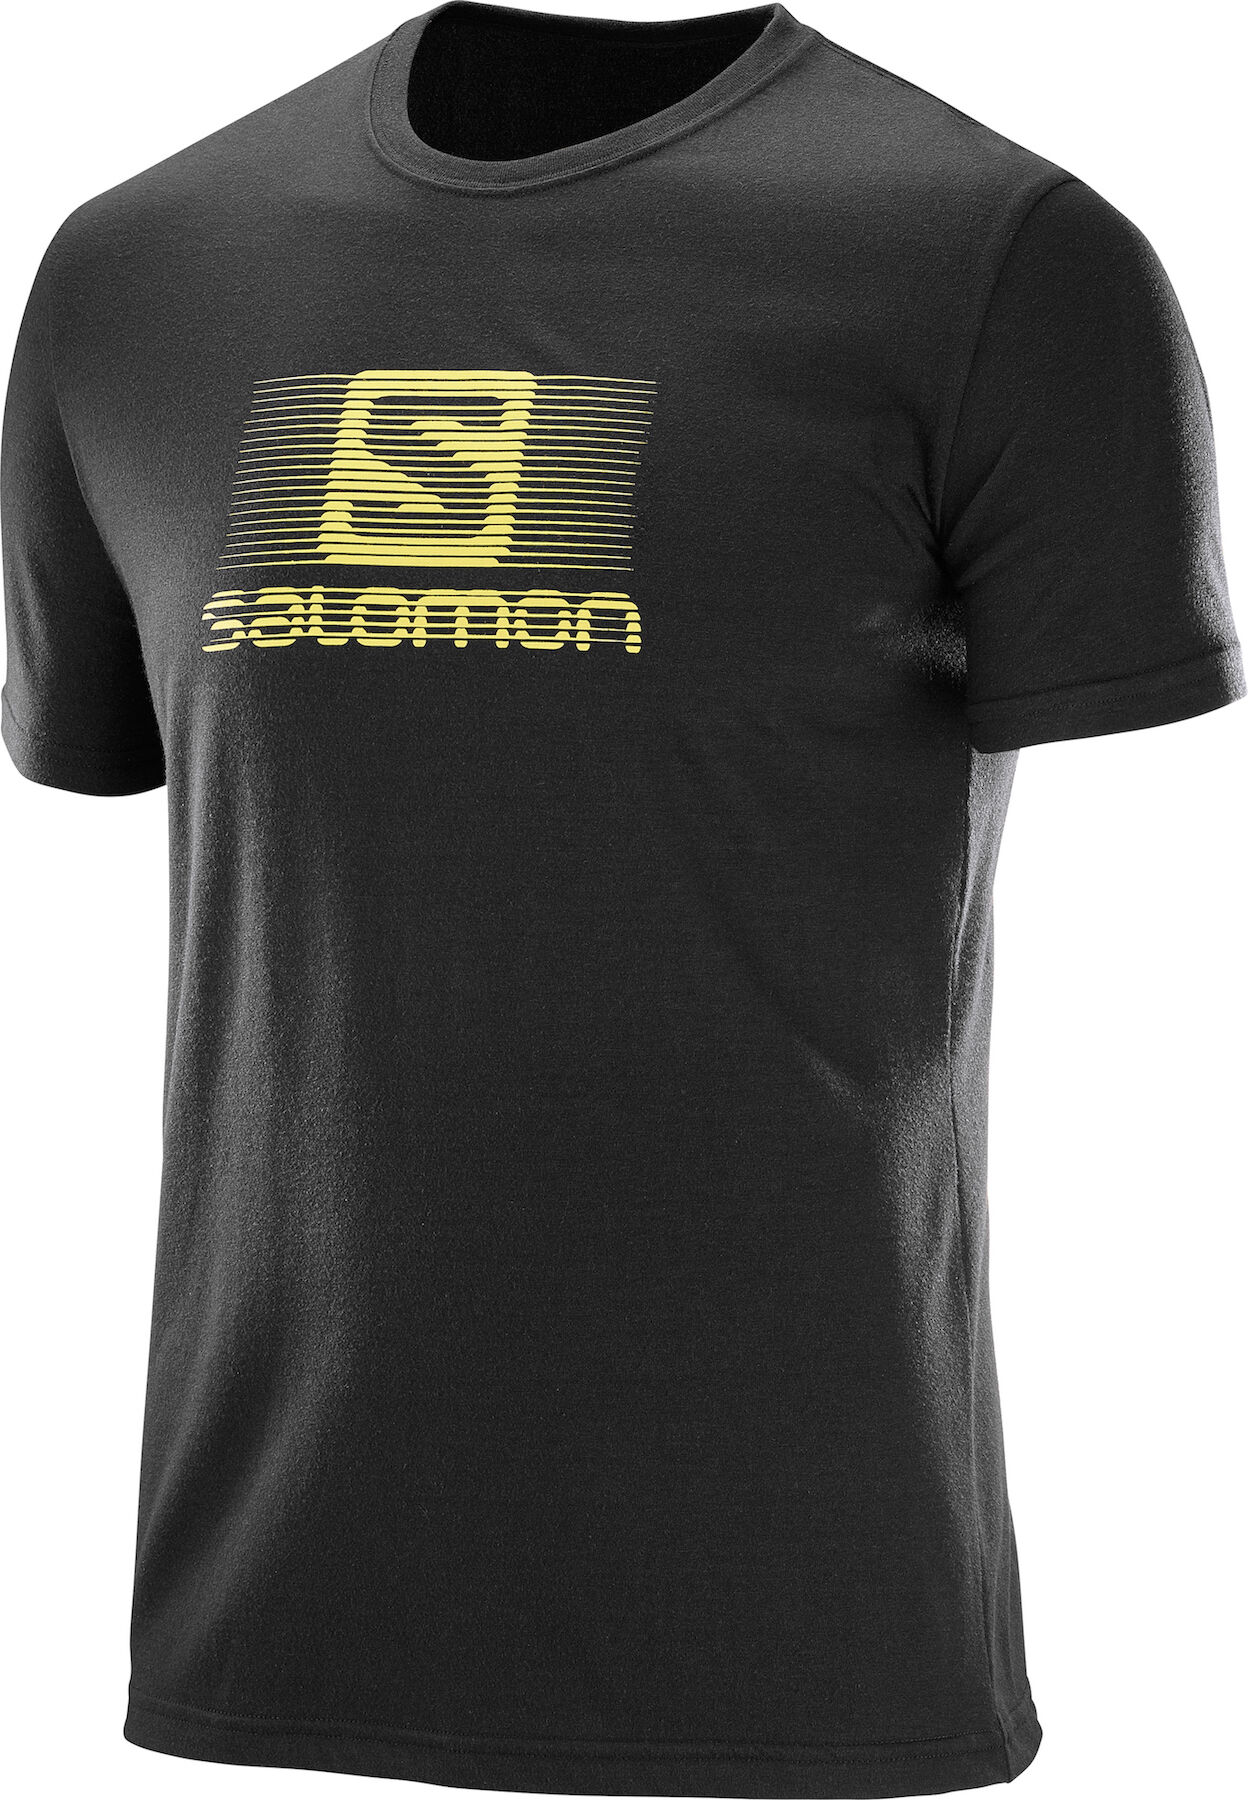 Salomon - Blend Logo - T-shirt - Men's